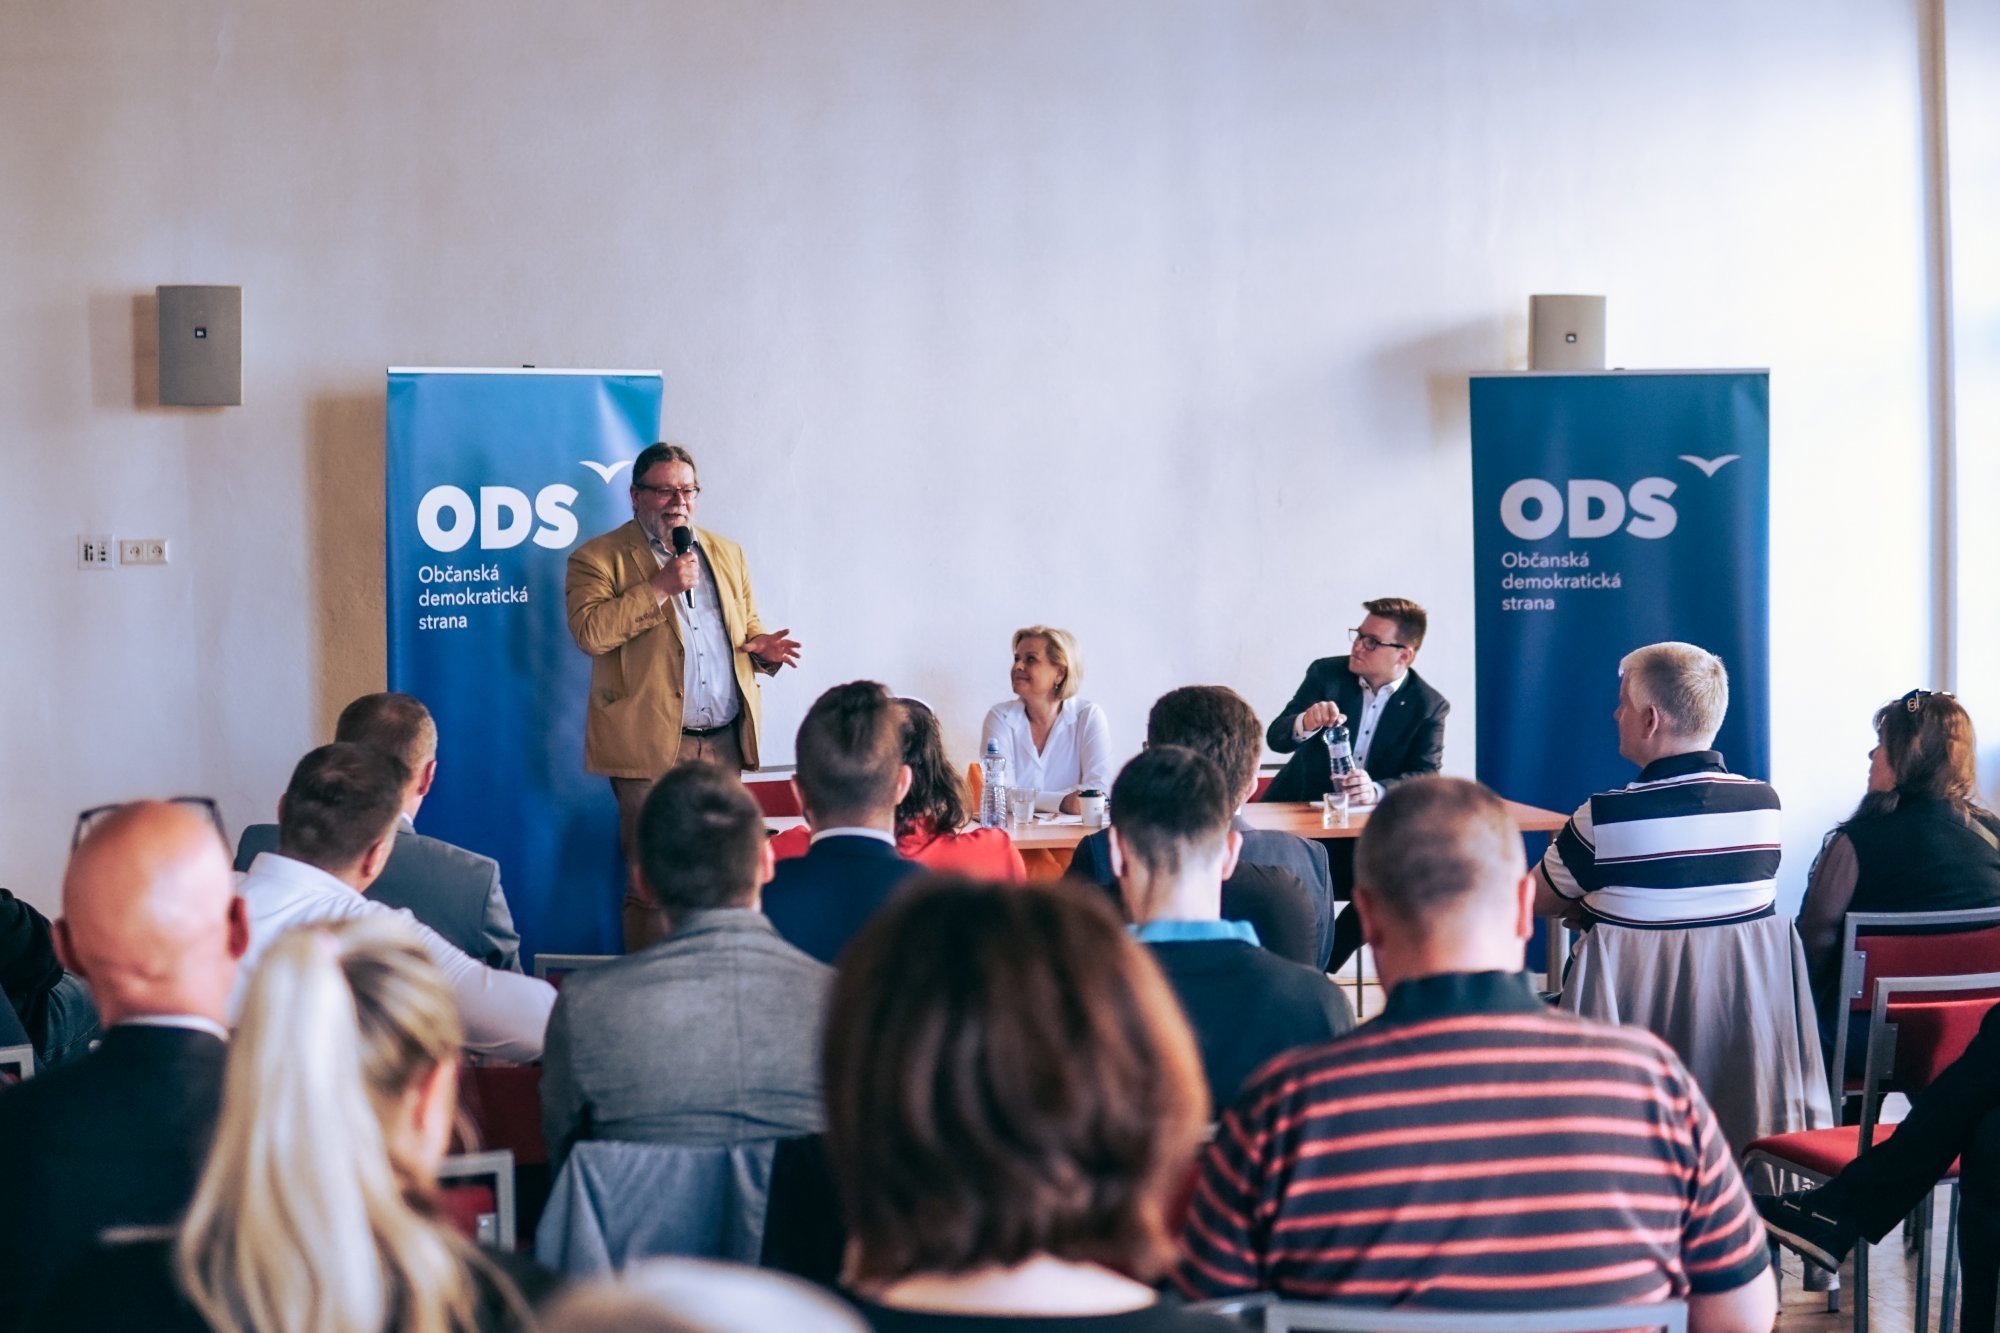 ODS blíž k vám: Europoslanci v Olomouci navázali na výjezdy do krajů, ve vůni tvarůžků otevřeně diskutovali s podnikateli v průmyslu i místními občany